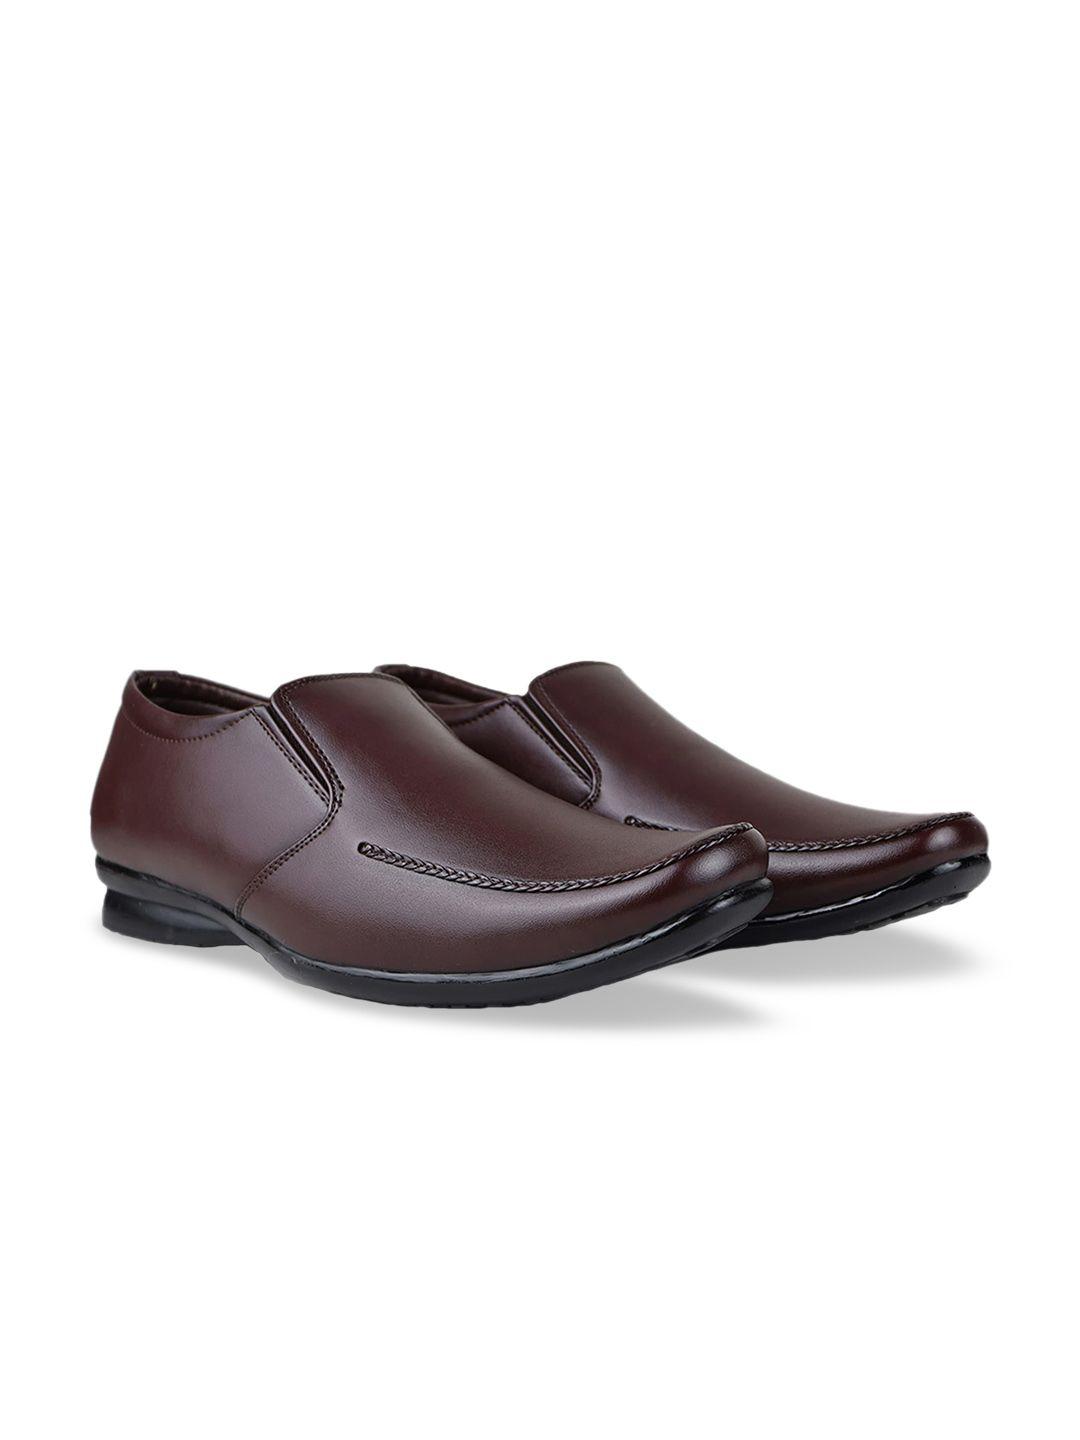 hikbi men leather formal slip-on shoes